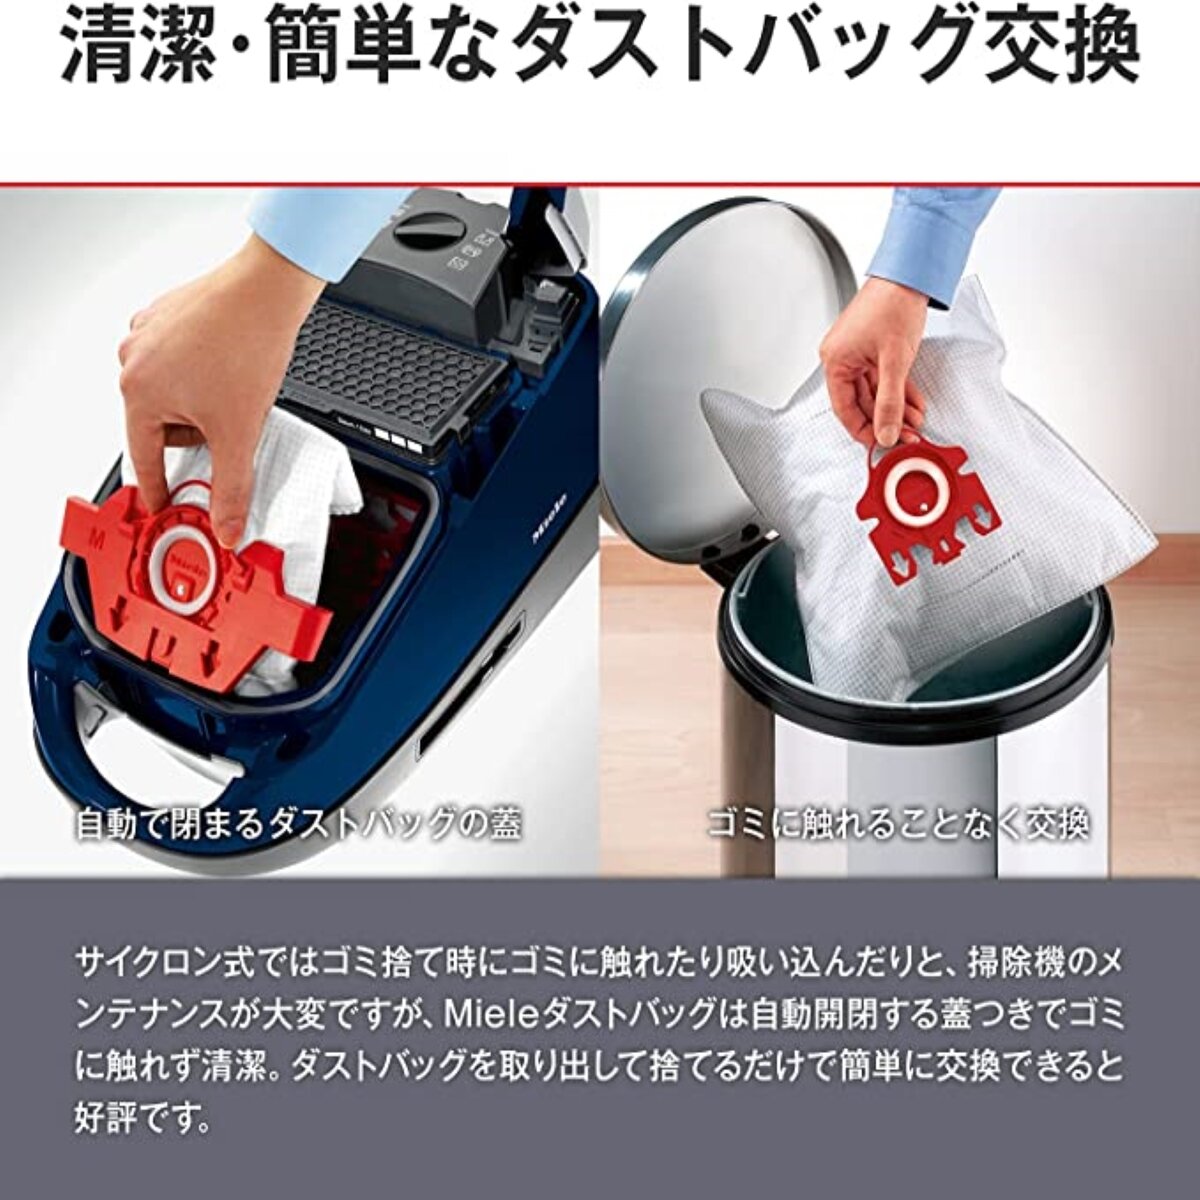 生活家電 掃除機 ミーレ 掃除機 オータムレッド CompactC2 SDCO4 | Costco Japan